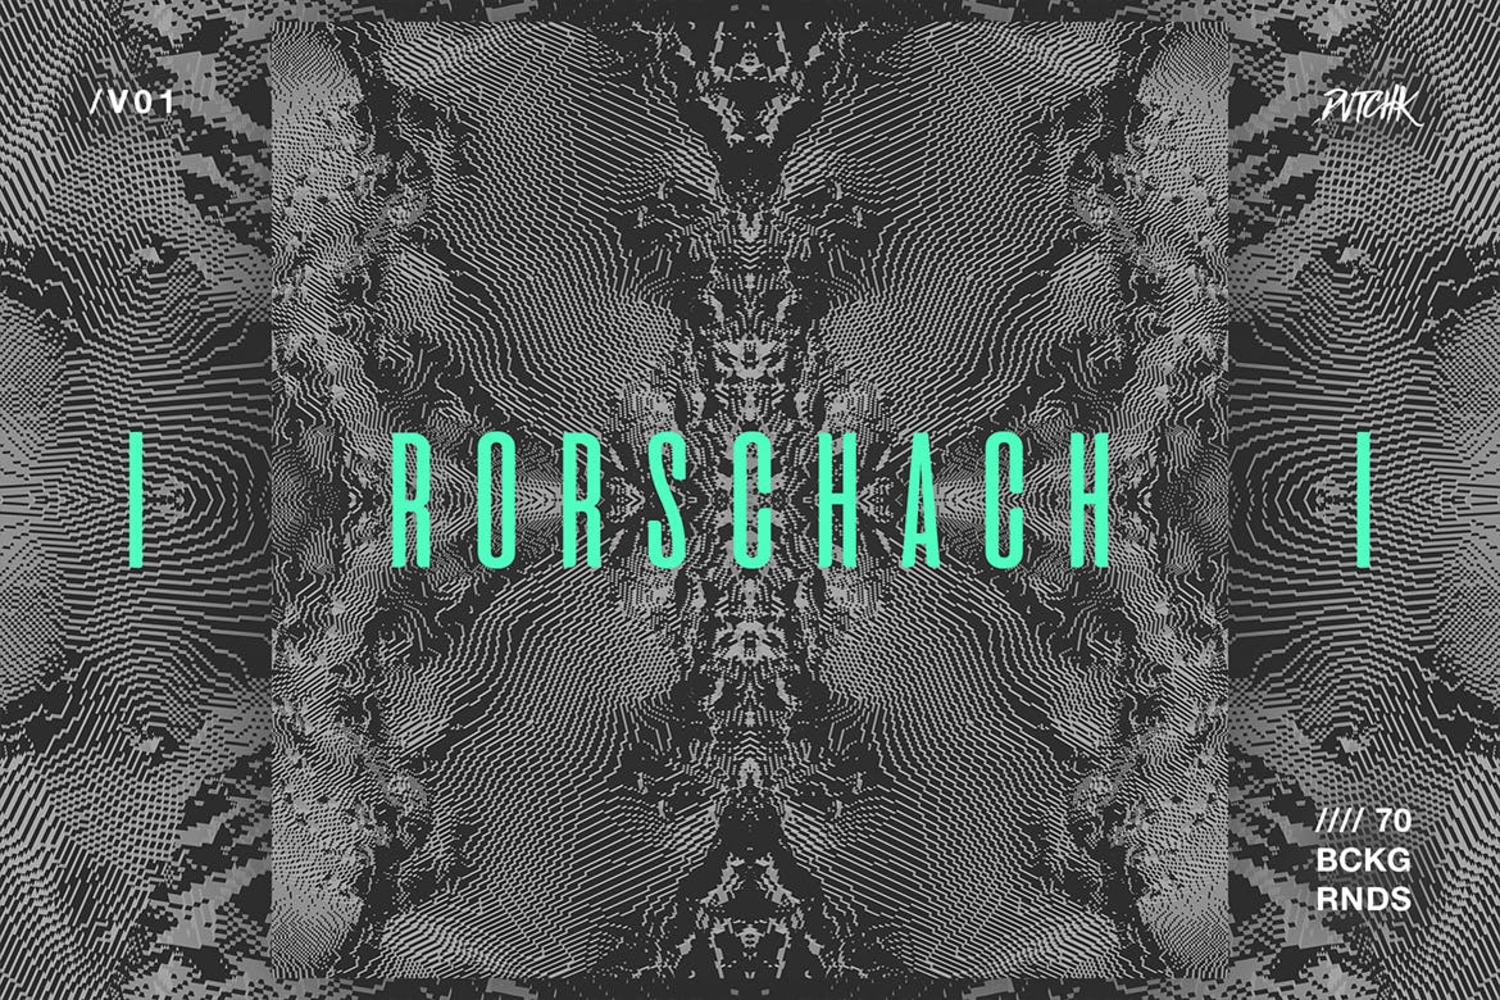 5383 玻璃裂纹万花筒像素点故障艺术纹理的背景图素材-Rorschach Experimental Glitch Backgrounds V02@GOOODME.COM